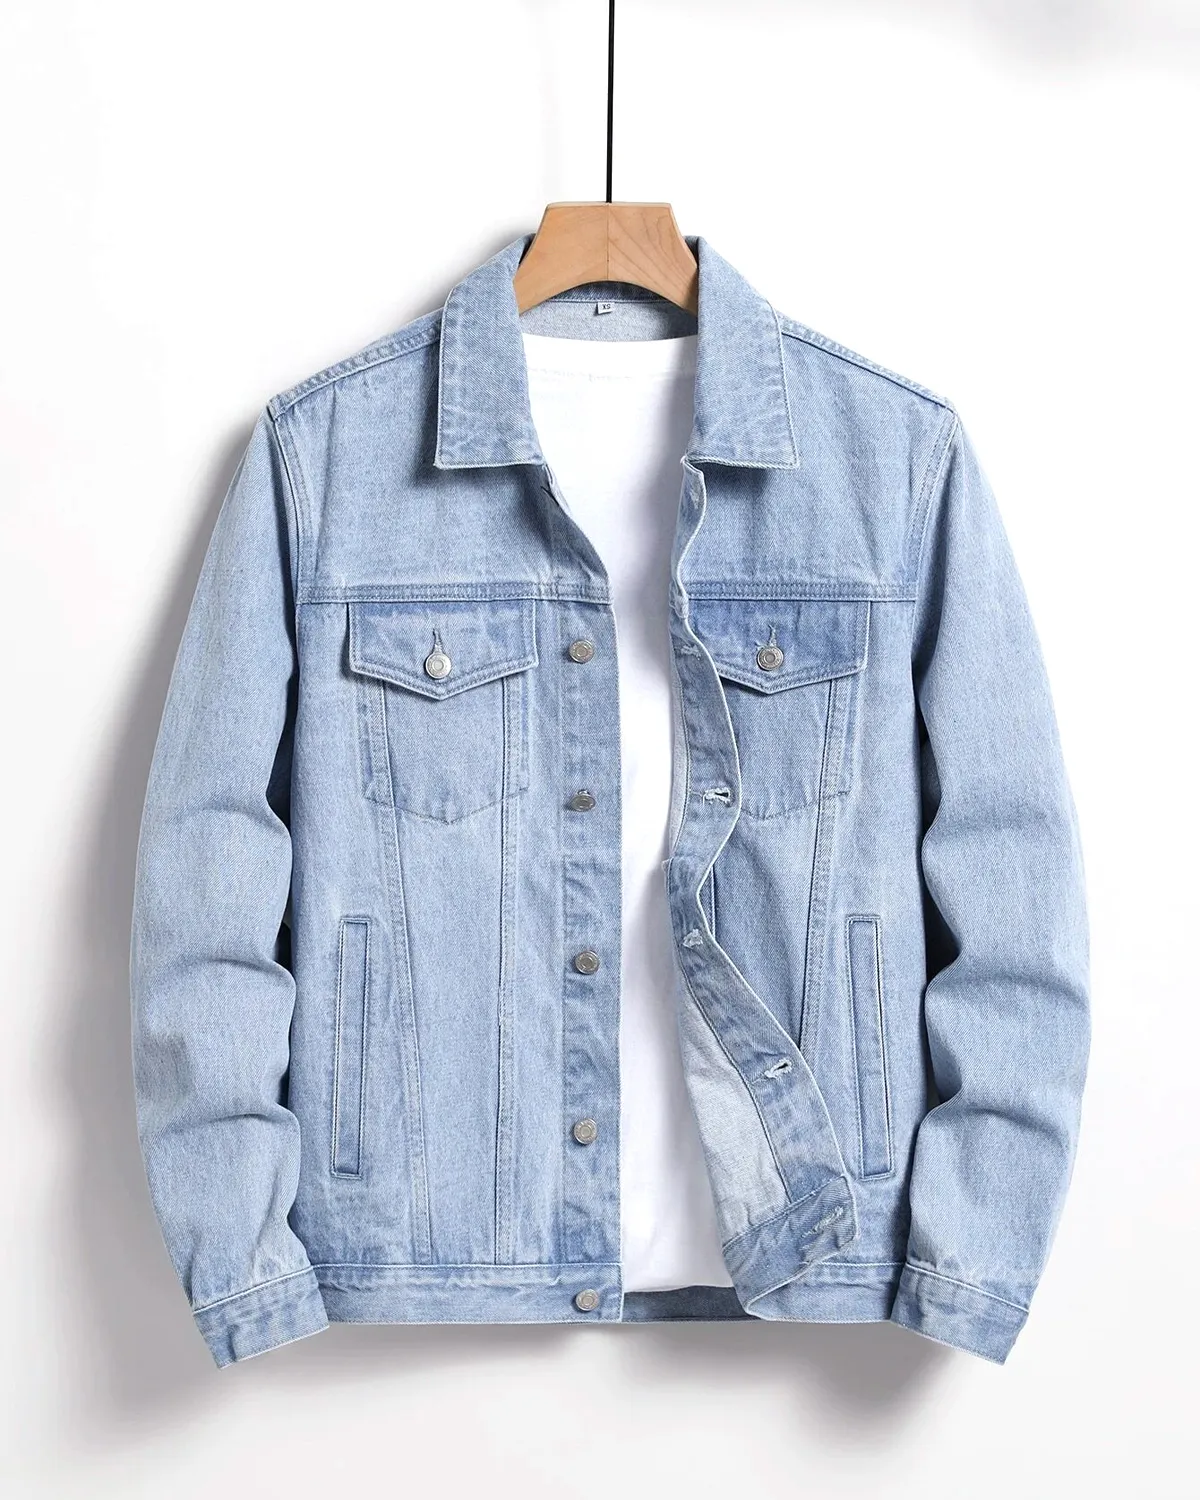 Yeni varış moda Streetwear Denim ceket yüksek kalite özel tasarım erkekler yırtık düğme ön Denim kot ceket özel logo